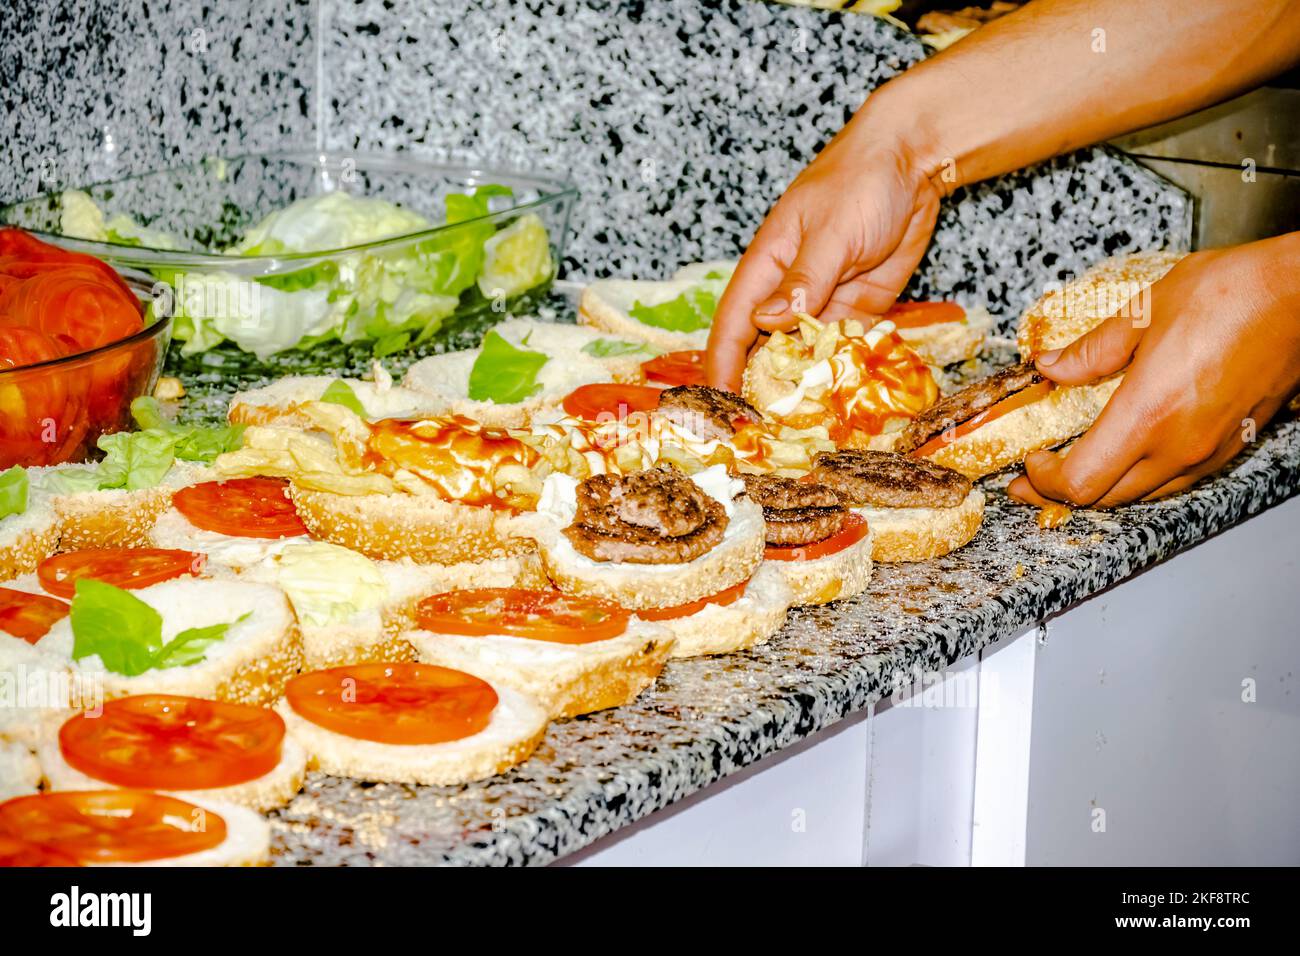 Assiette de laitue et de tomates sur le plan de travail, sur les hamburgers ouverts en rangée avec des frites, des steaks grillés hachés et de la sauce ketchup. Banque D'Images